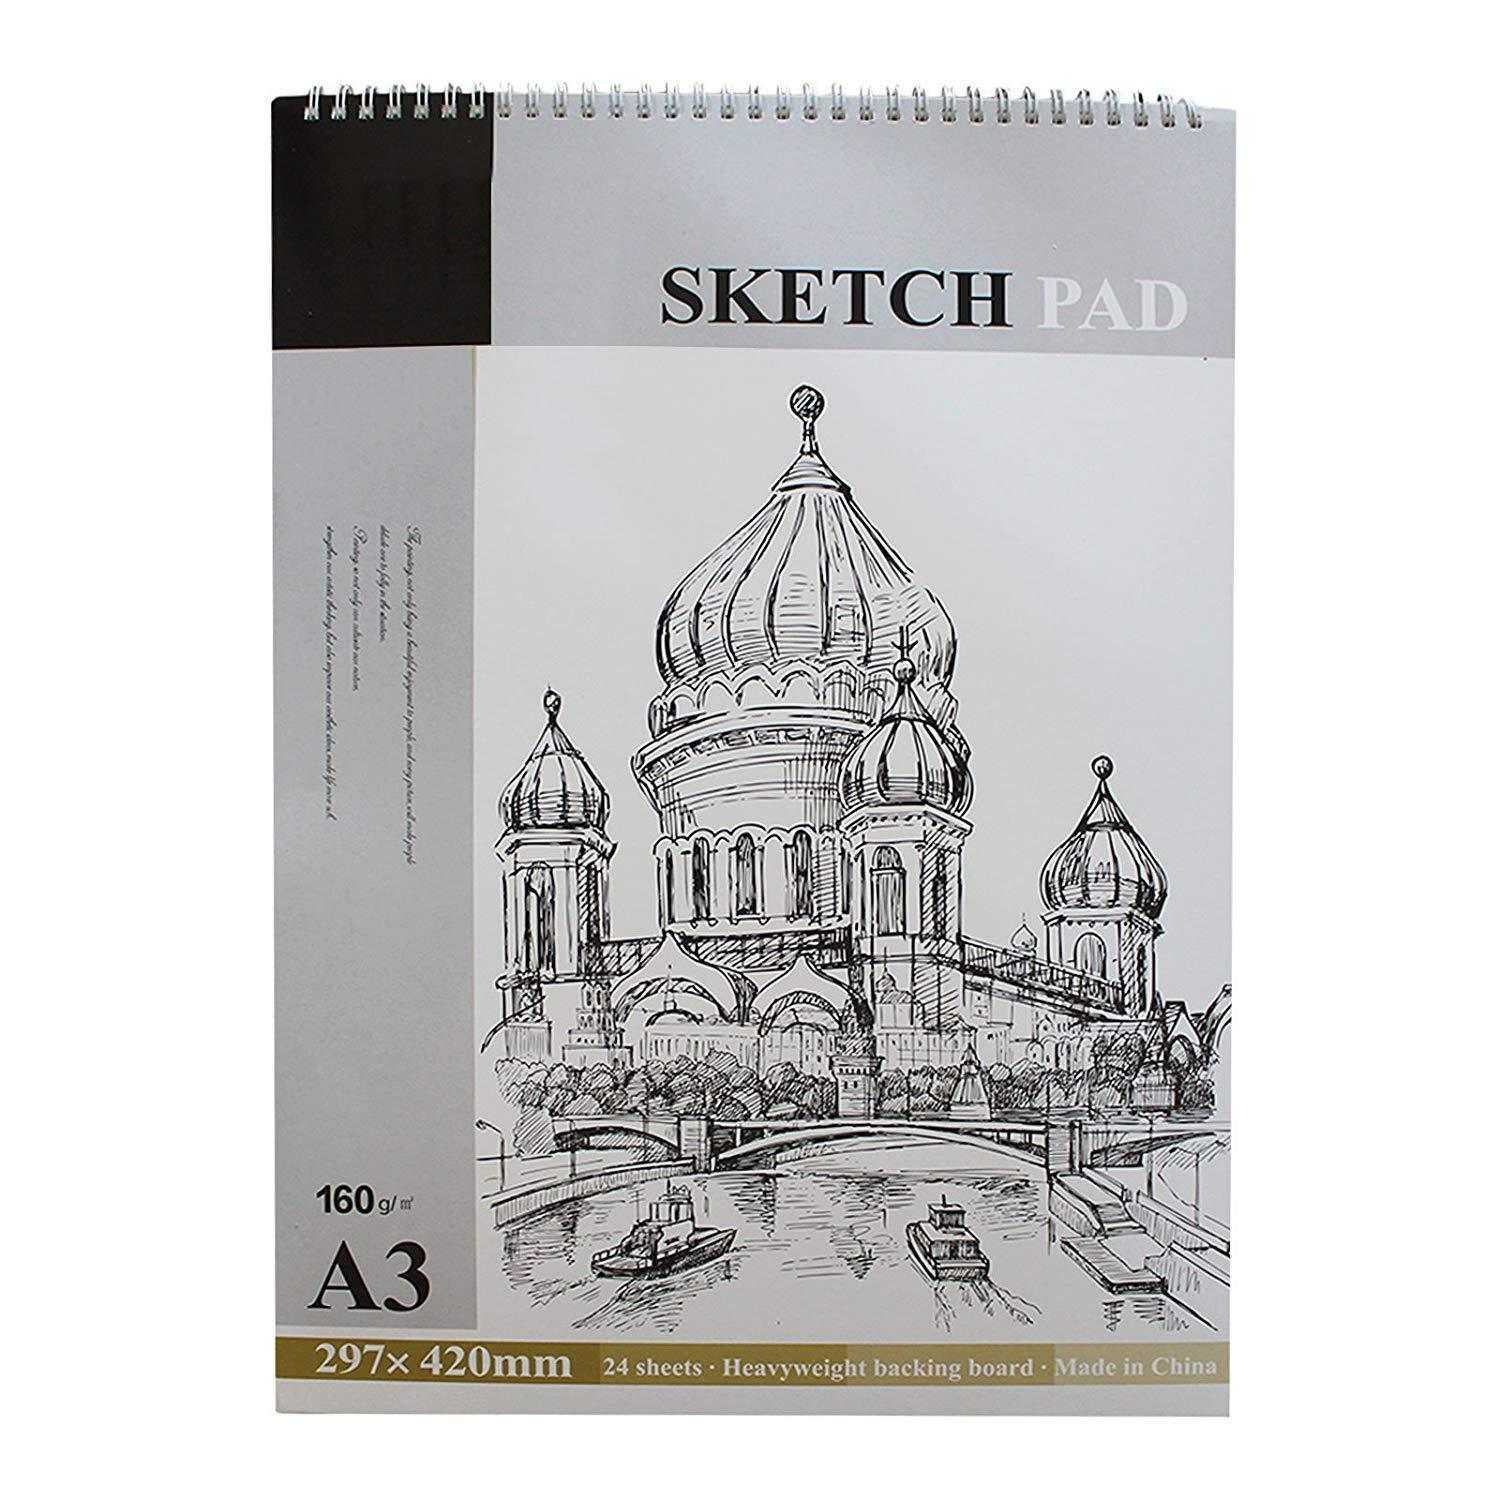 A3 Sketch Pad White - 24 Sheets